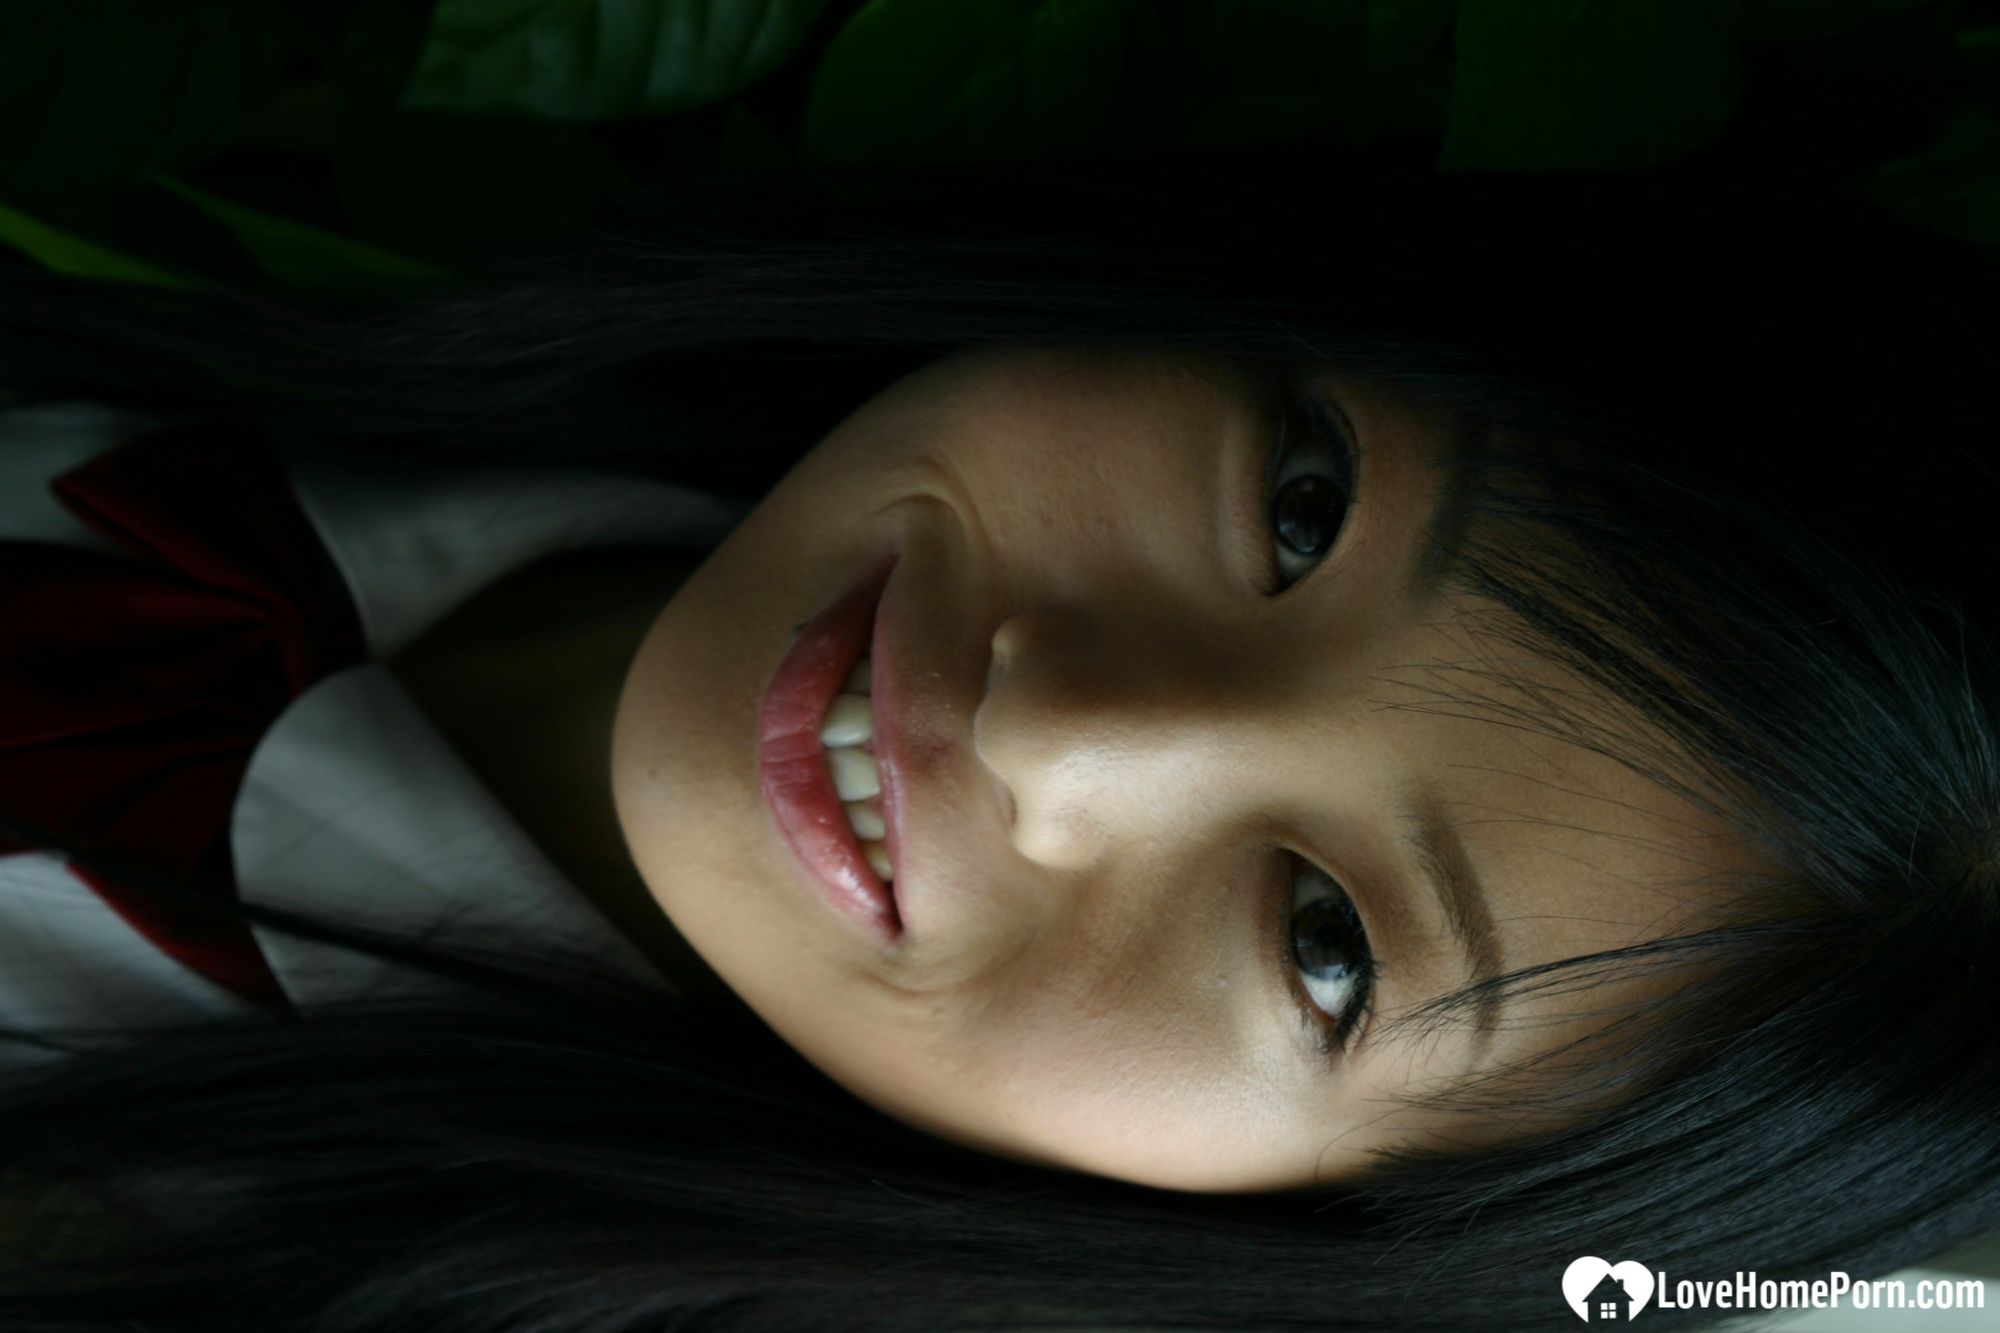 Asian schoolgirl looks for some online exposure #24